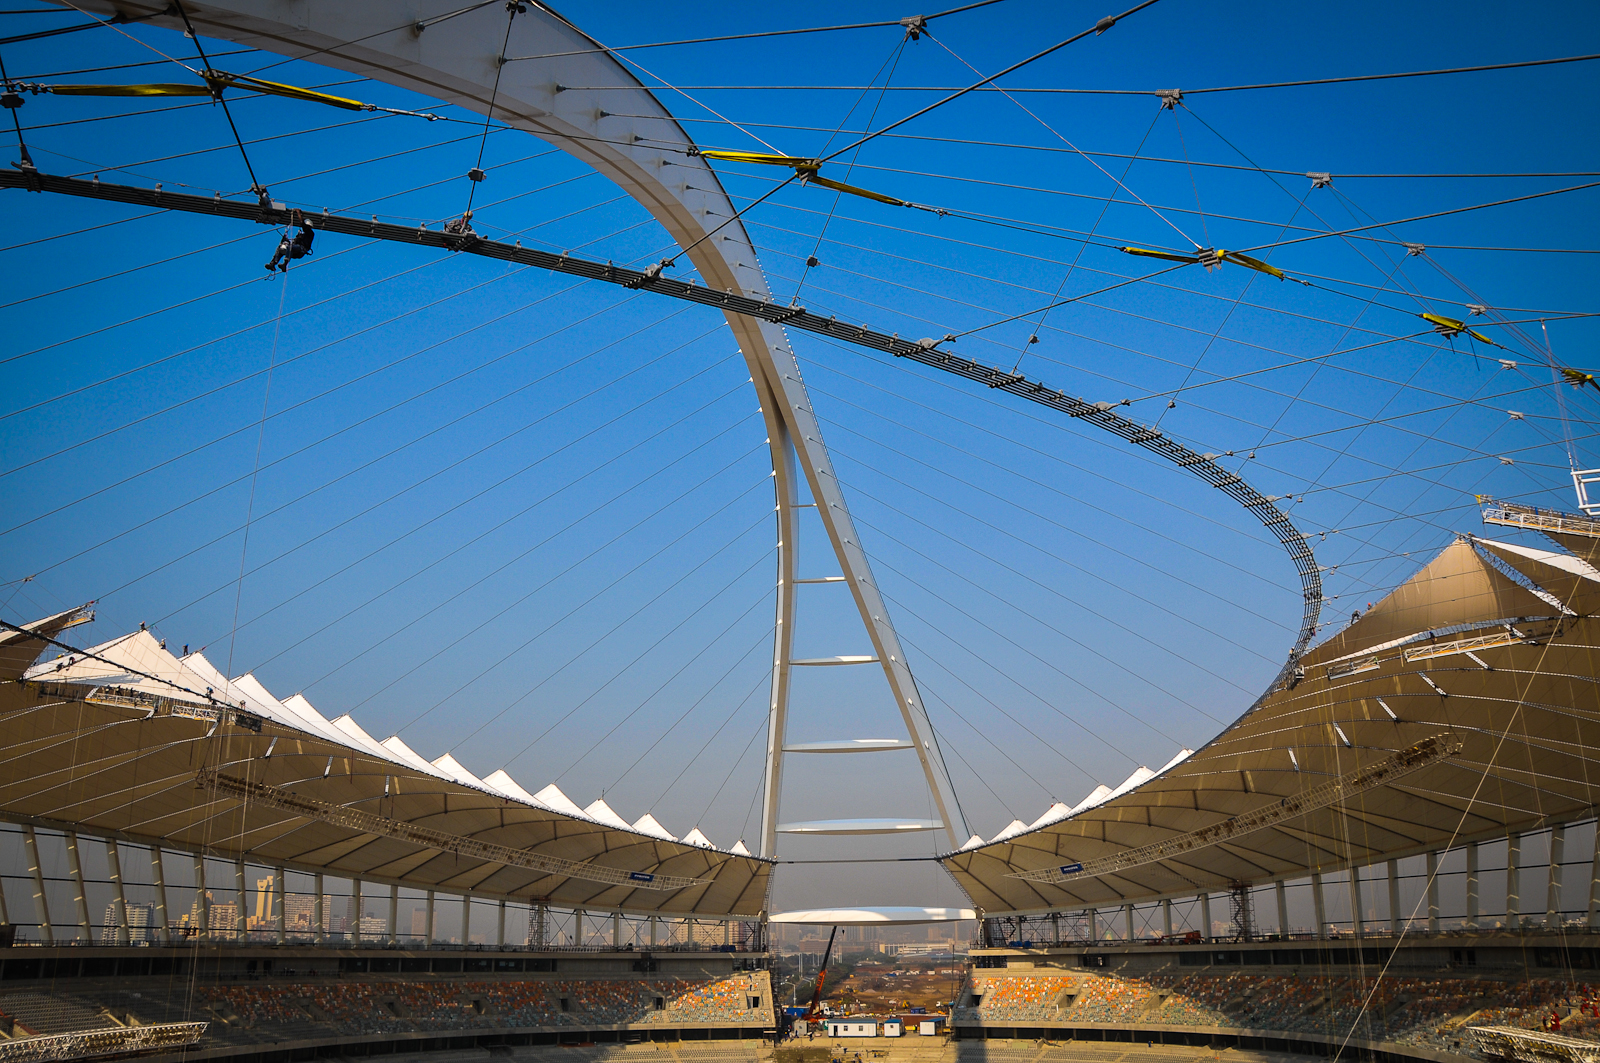 Durban Stadium